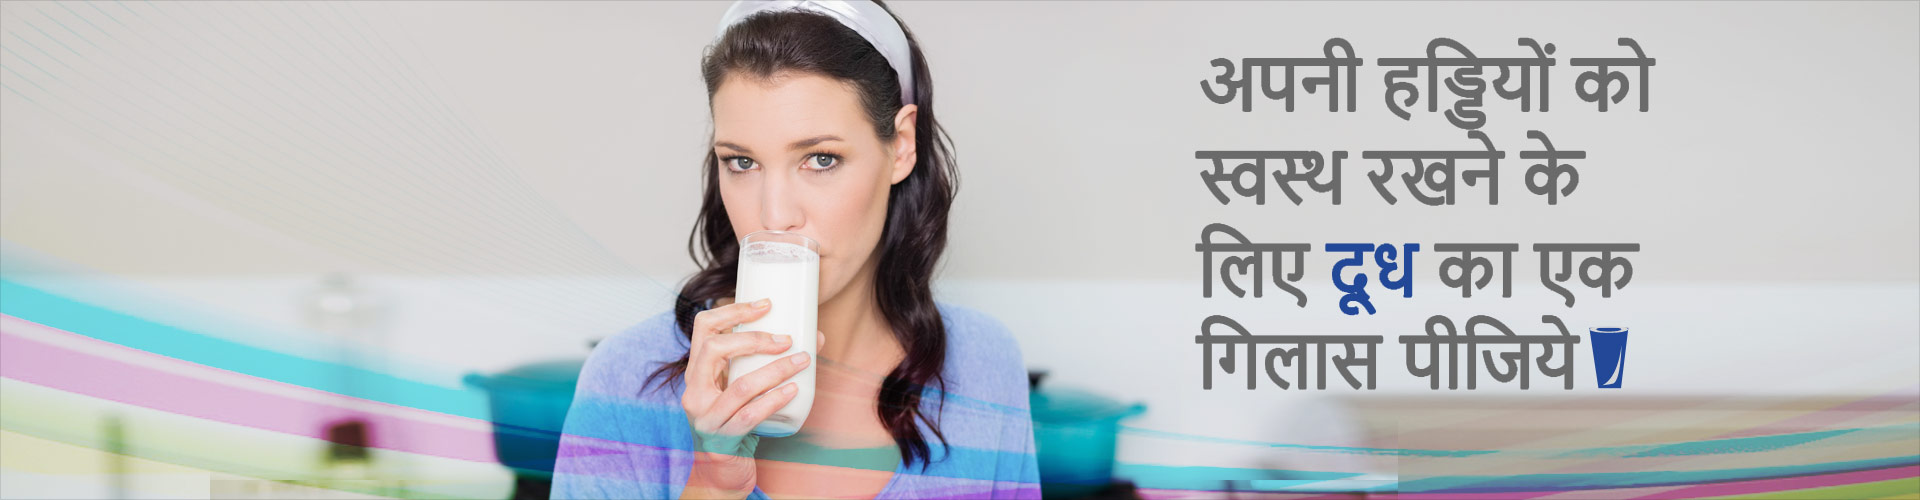 अपनी हड्डियों को स्वस्थ रखने के लिए दूध का एक गिलास पीजिये !
